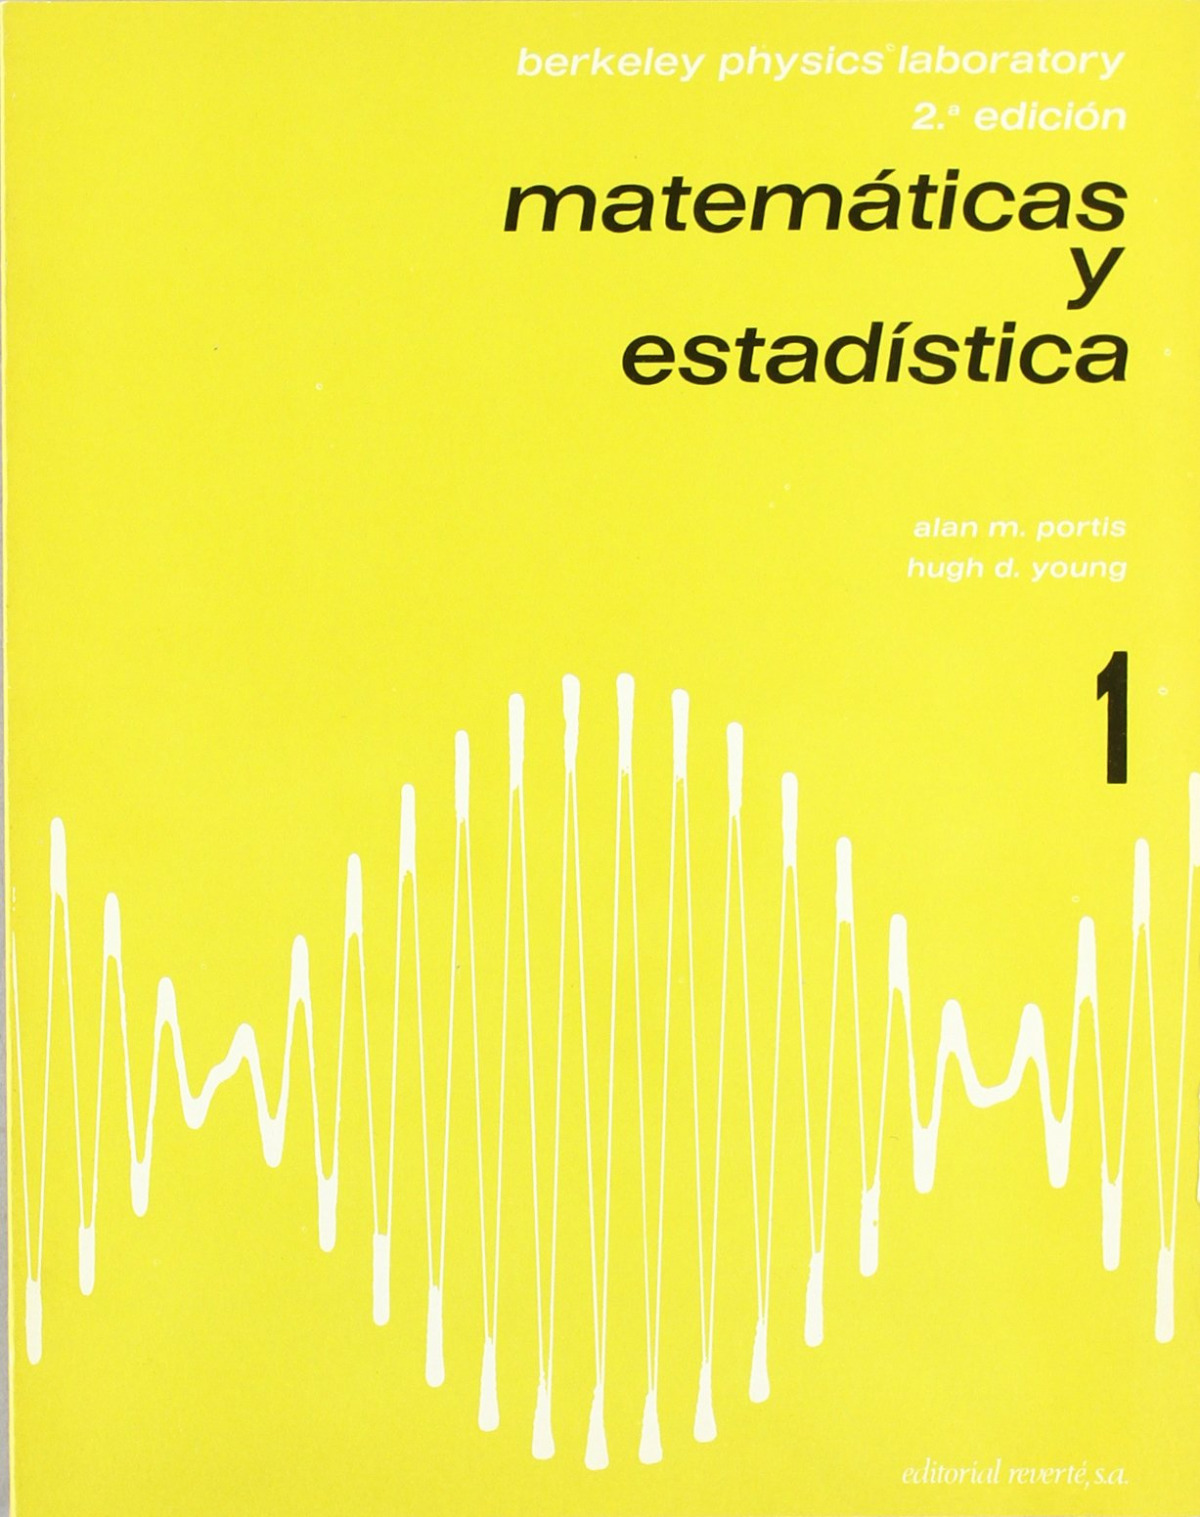 Matemáticas y estadística - B.P.C. (Berkeley Physics Course)